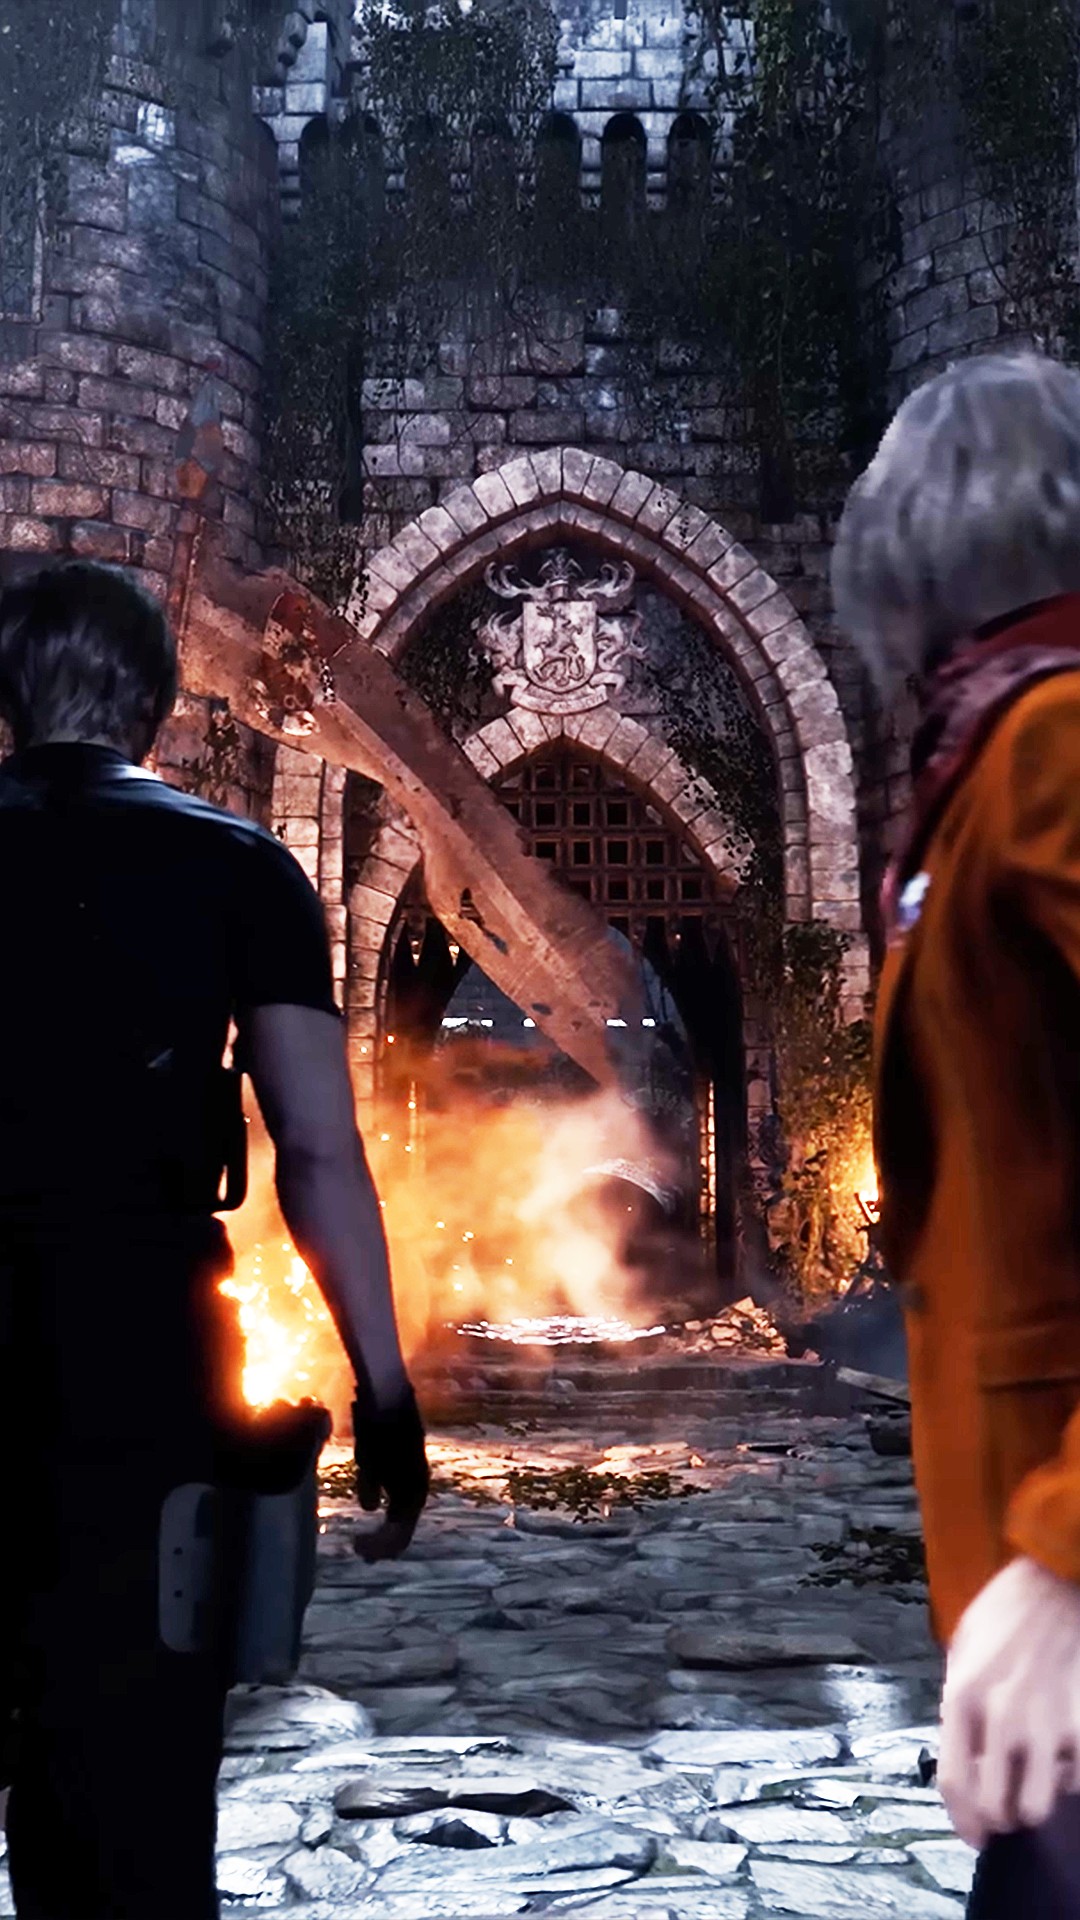 Resident Evil 4 Remake alcança mais um marco incrível de vendas